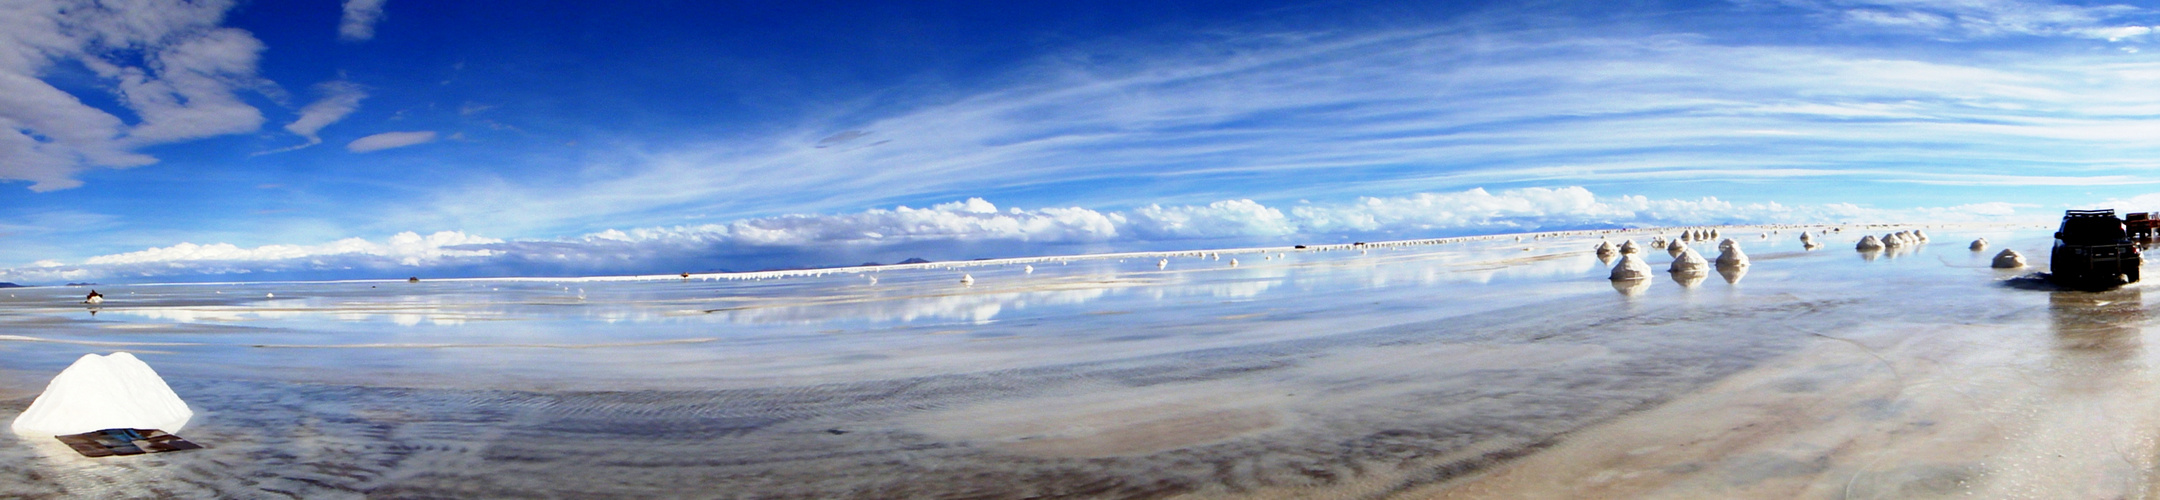 Salar de Uyuni- Potosi-Bolivia 3